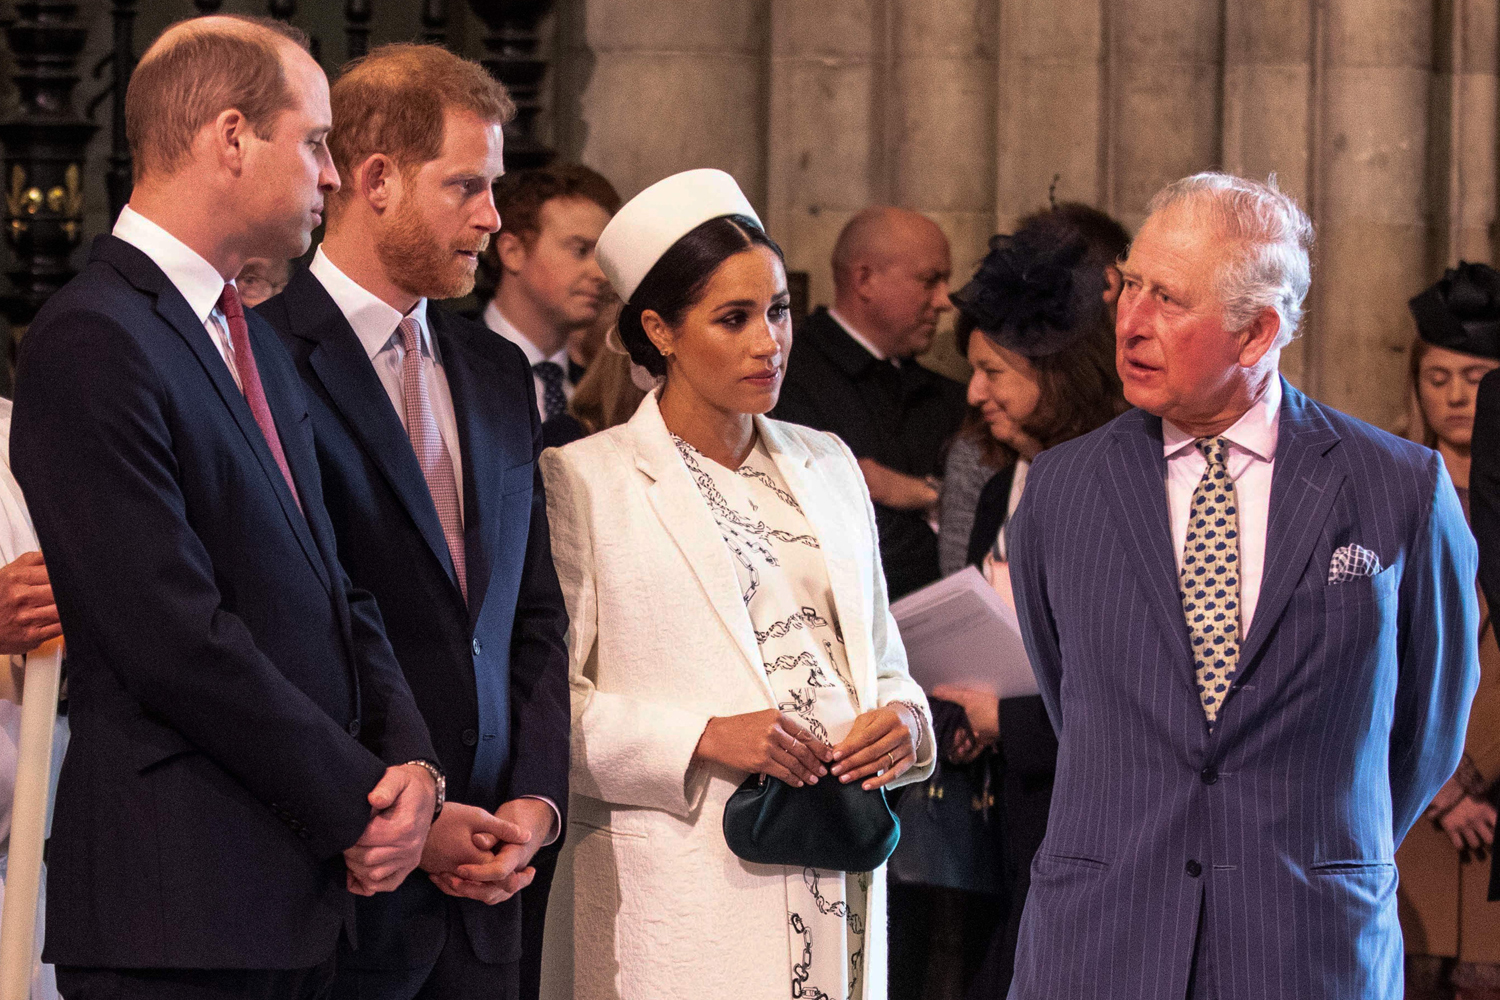 Según fuentes Harry y Carlos III han mantenido “conversaciones positivas” previo a la coronación